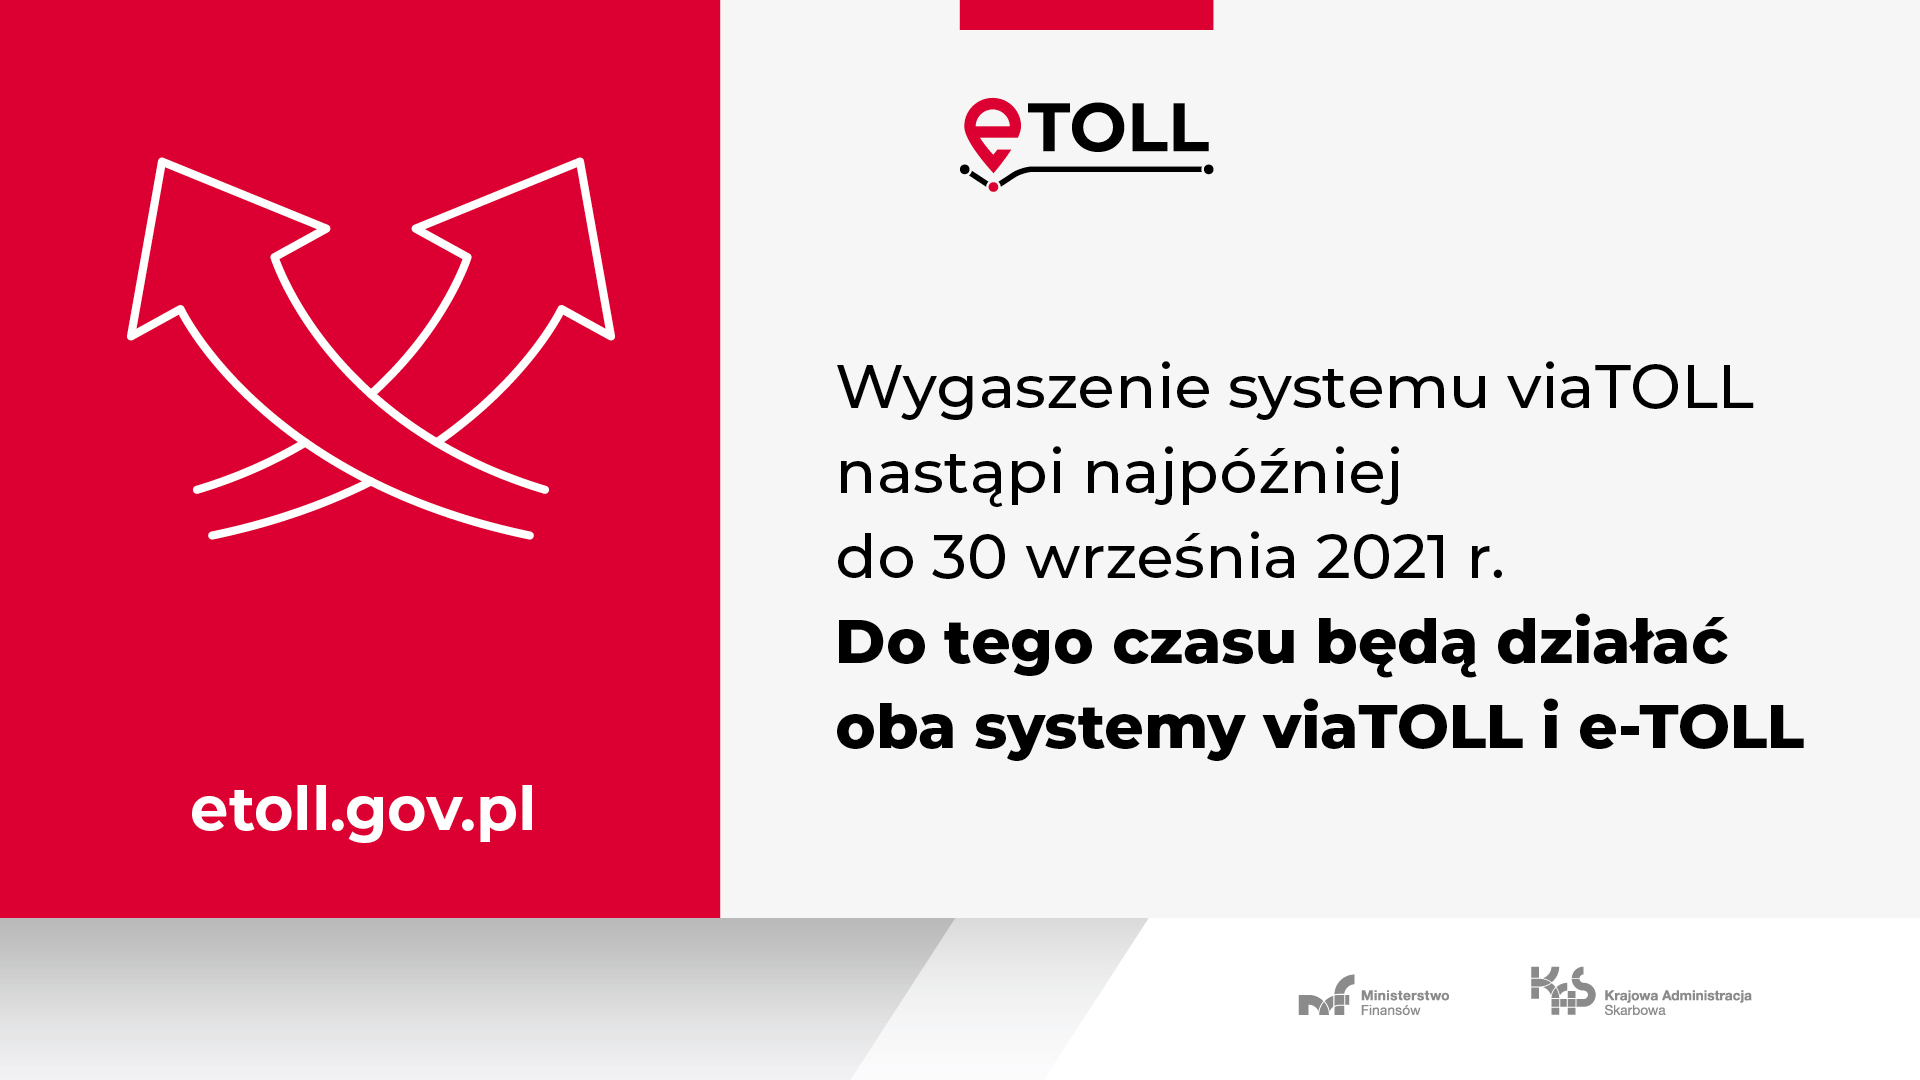 Wygaszenie systemu viaTOLL nastapi najpóźniej do 30 września 2021 r. Do tego czasu będa działać oba systemy viaTOLL i e-TOLL